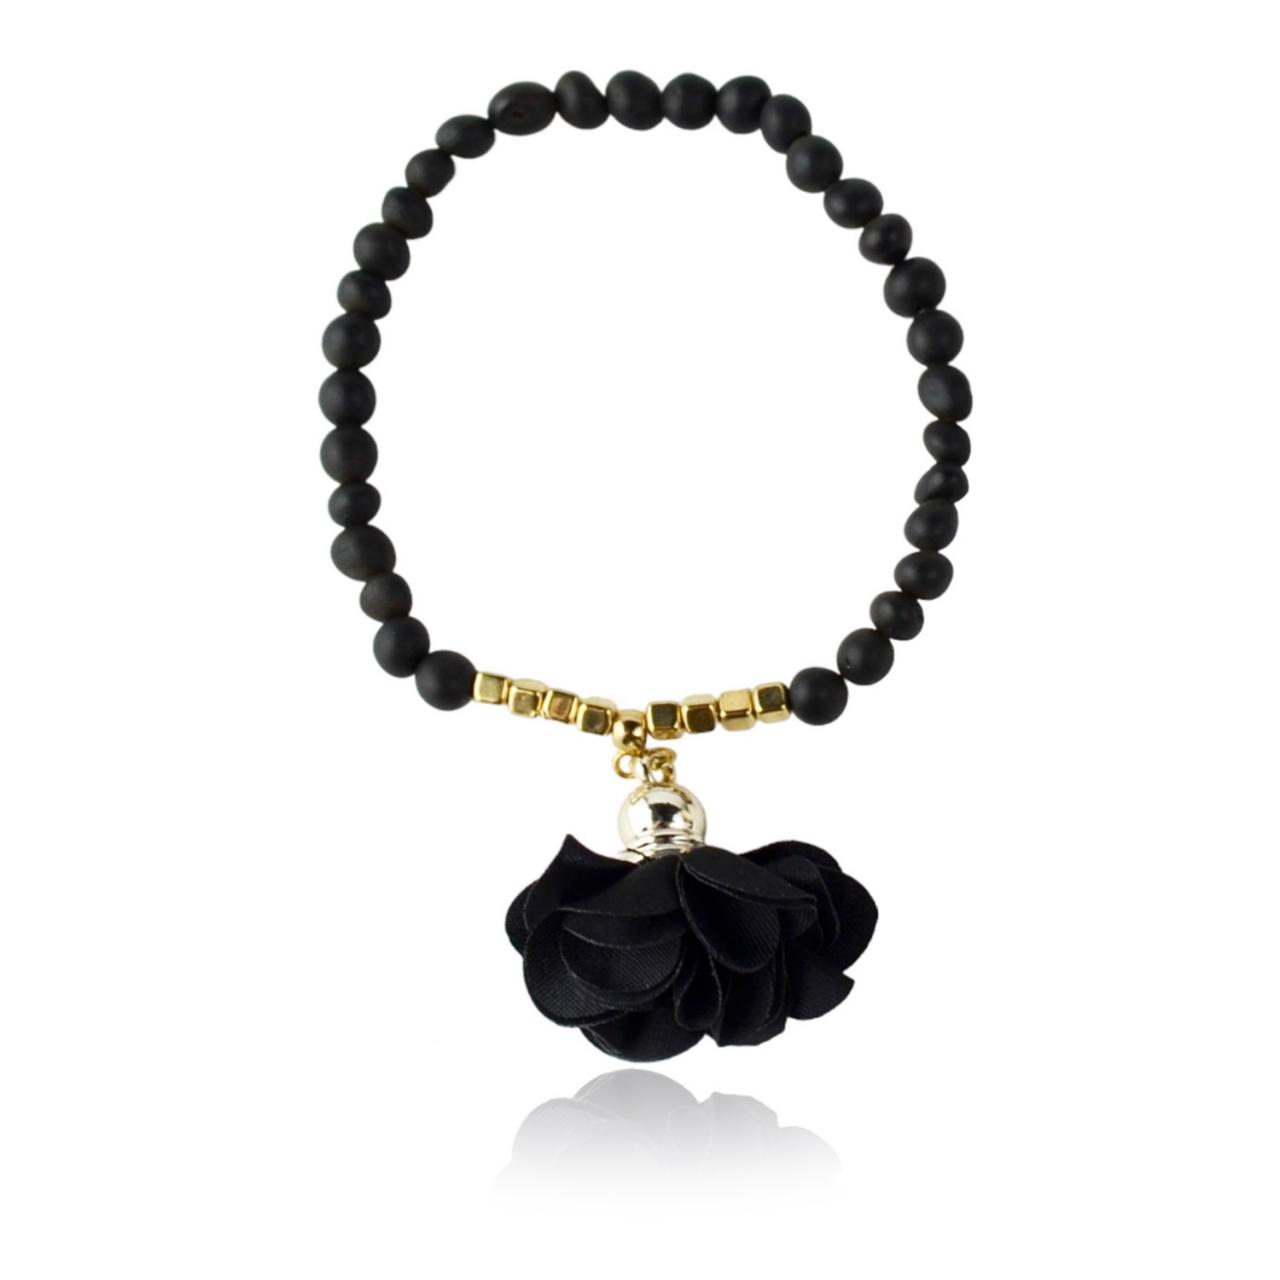 Black Baltic Amber Bracelet Beads Shop From Maritavira | Kk11